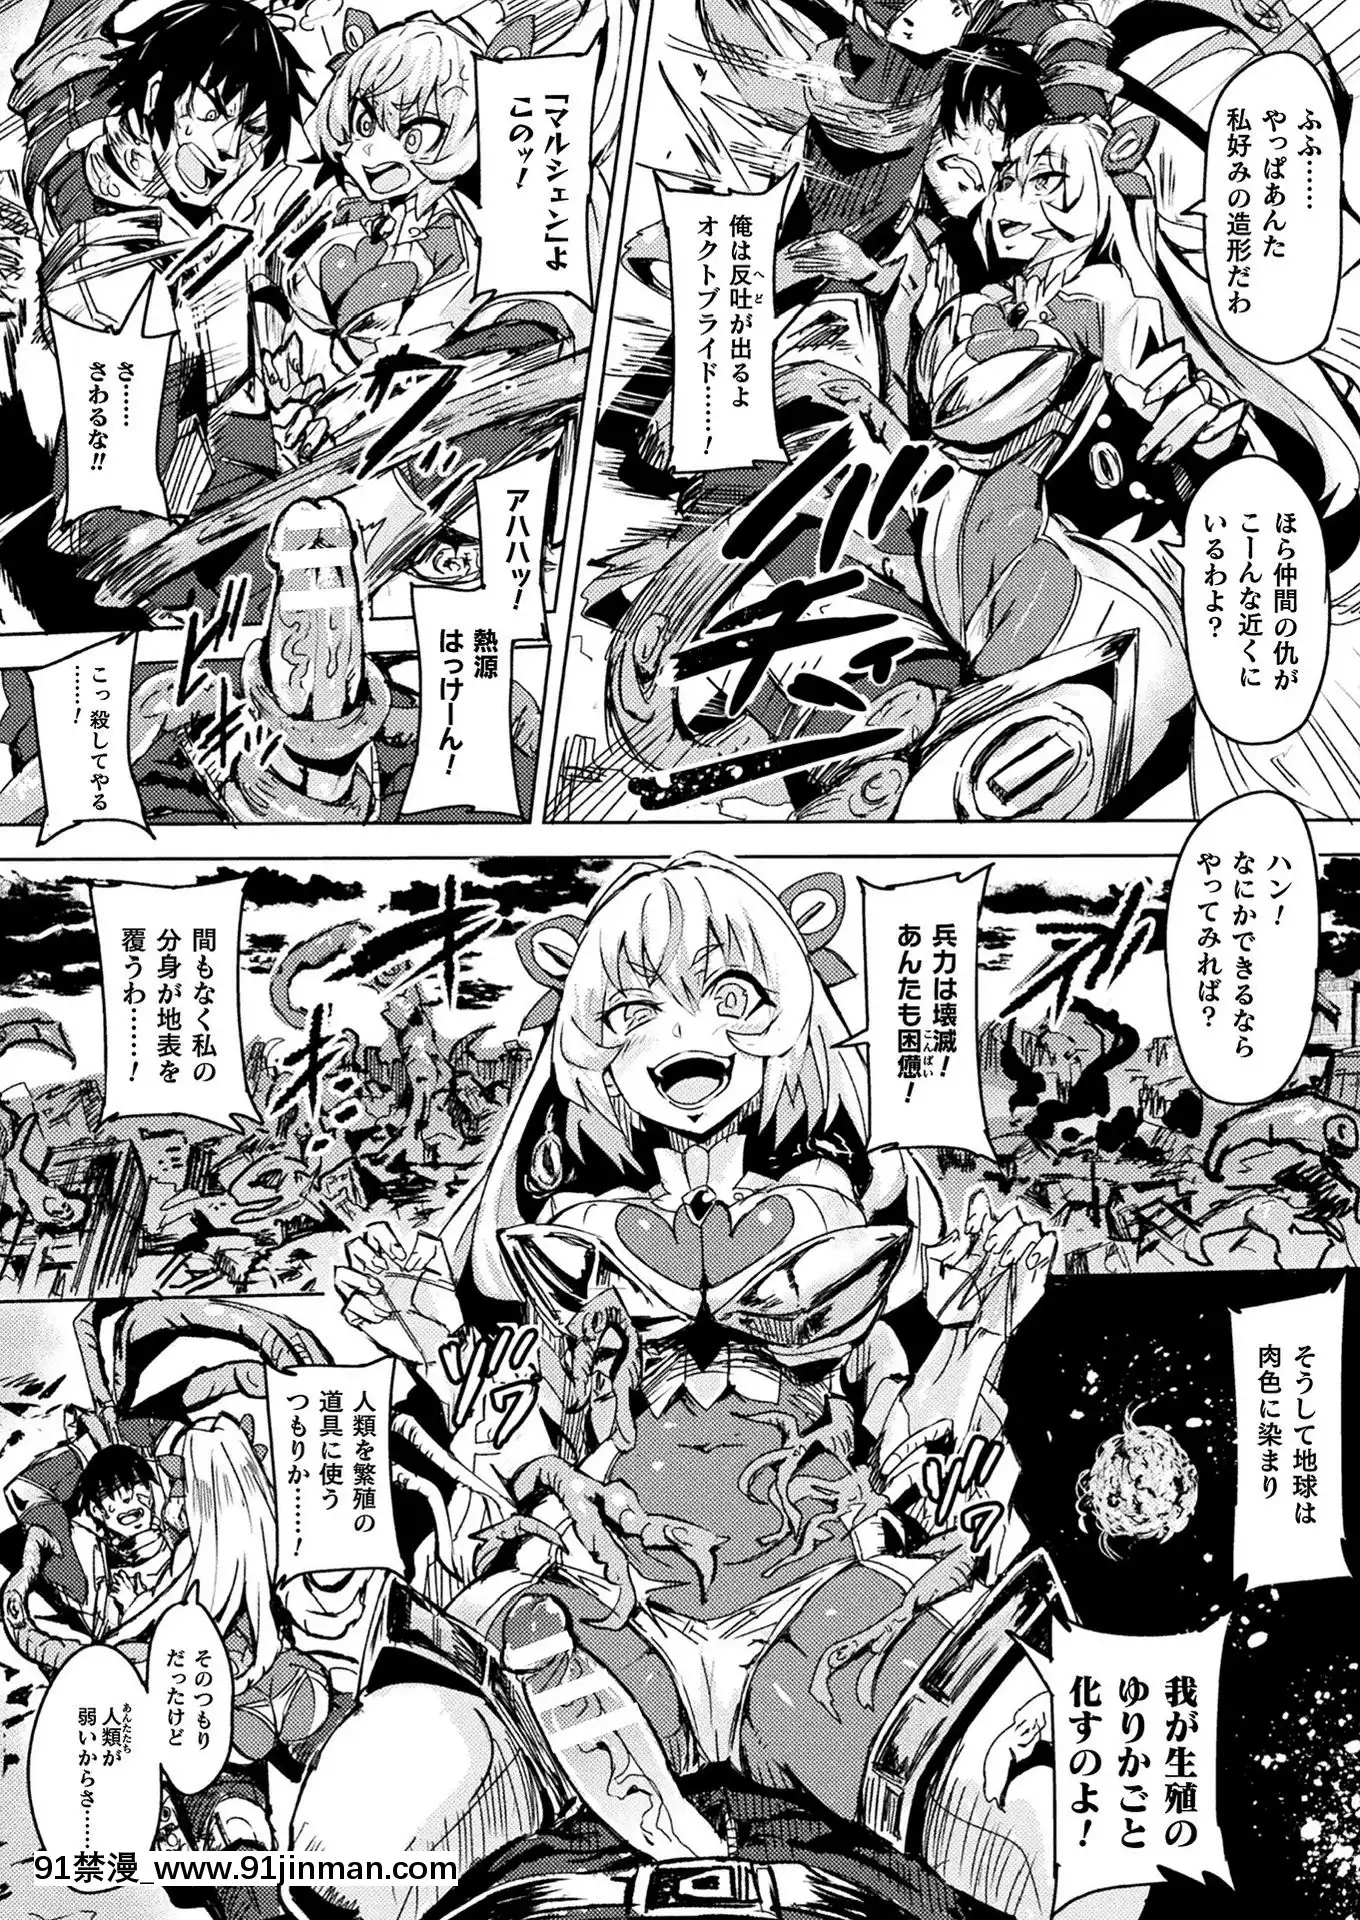 (Truyện tranh Seinen) [Khác] Truyện tranh Unreal Tháng 2 năm 2020 Vol.83 [Kỹ thuật số]【truyện tranh thám tử lừng danh conan tập 98】